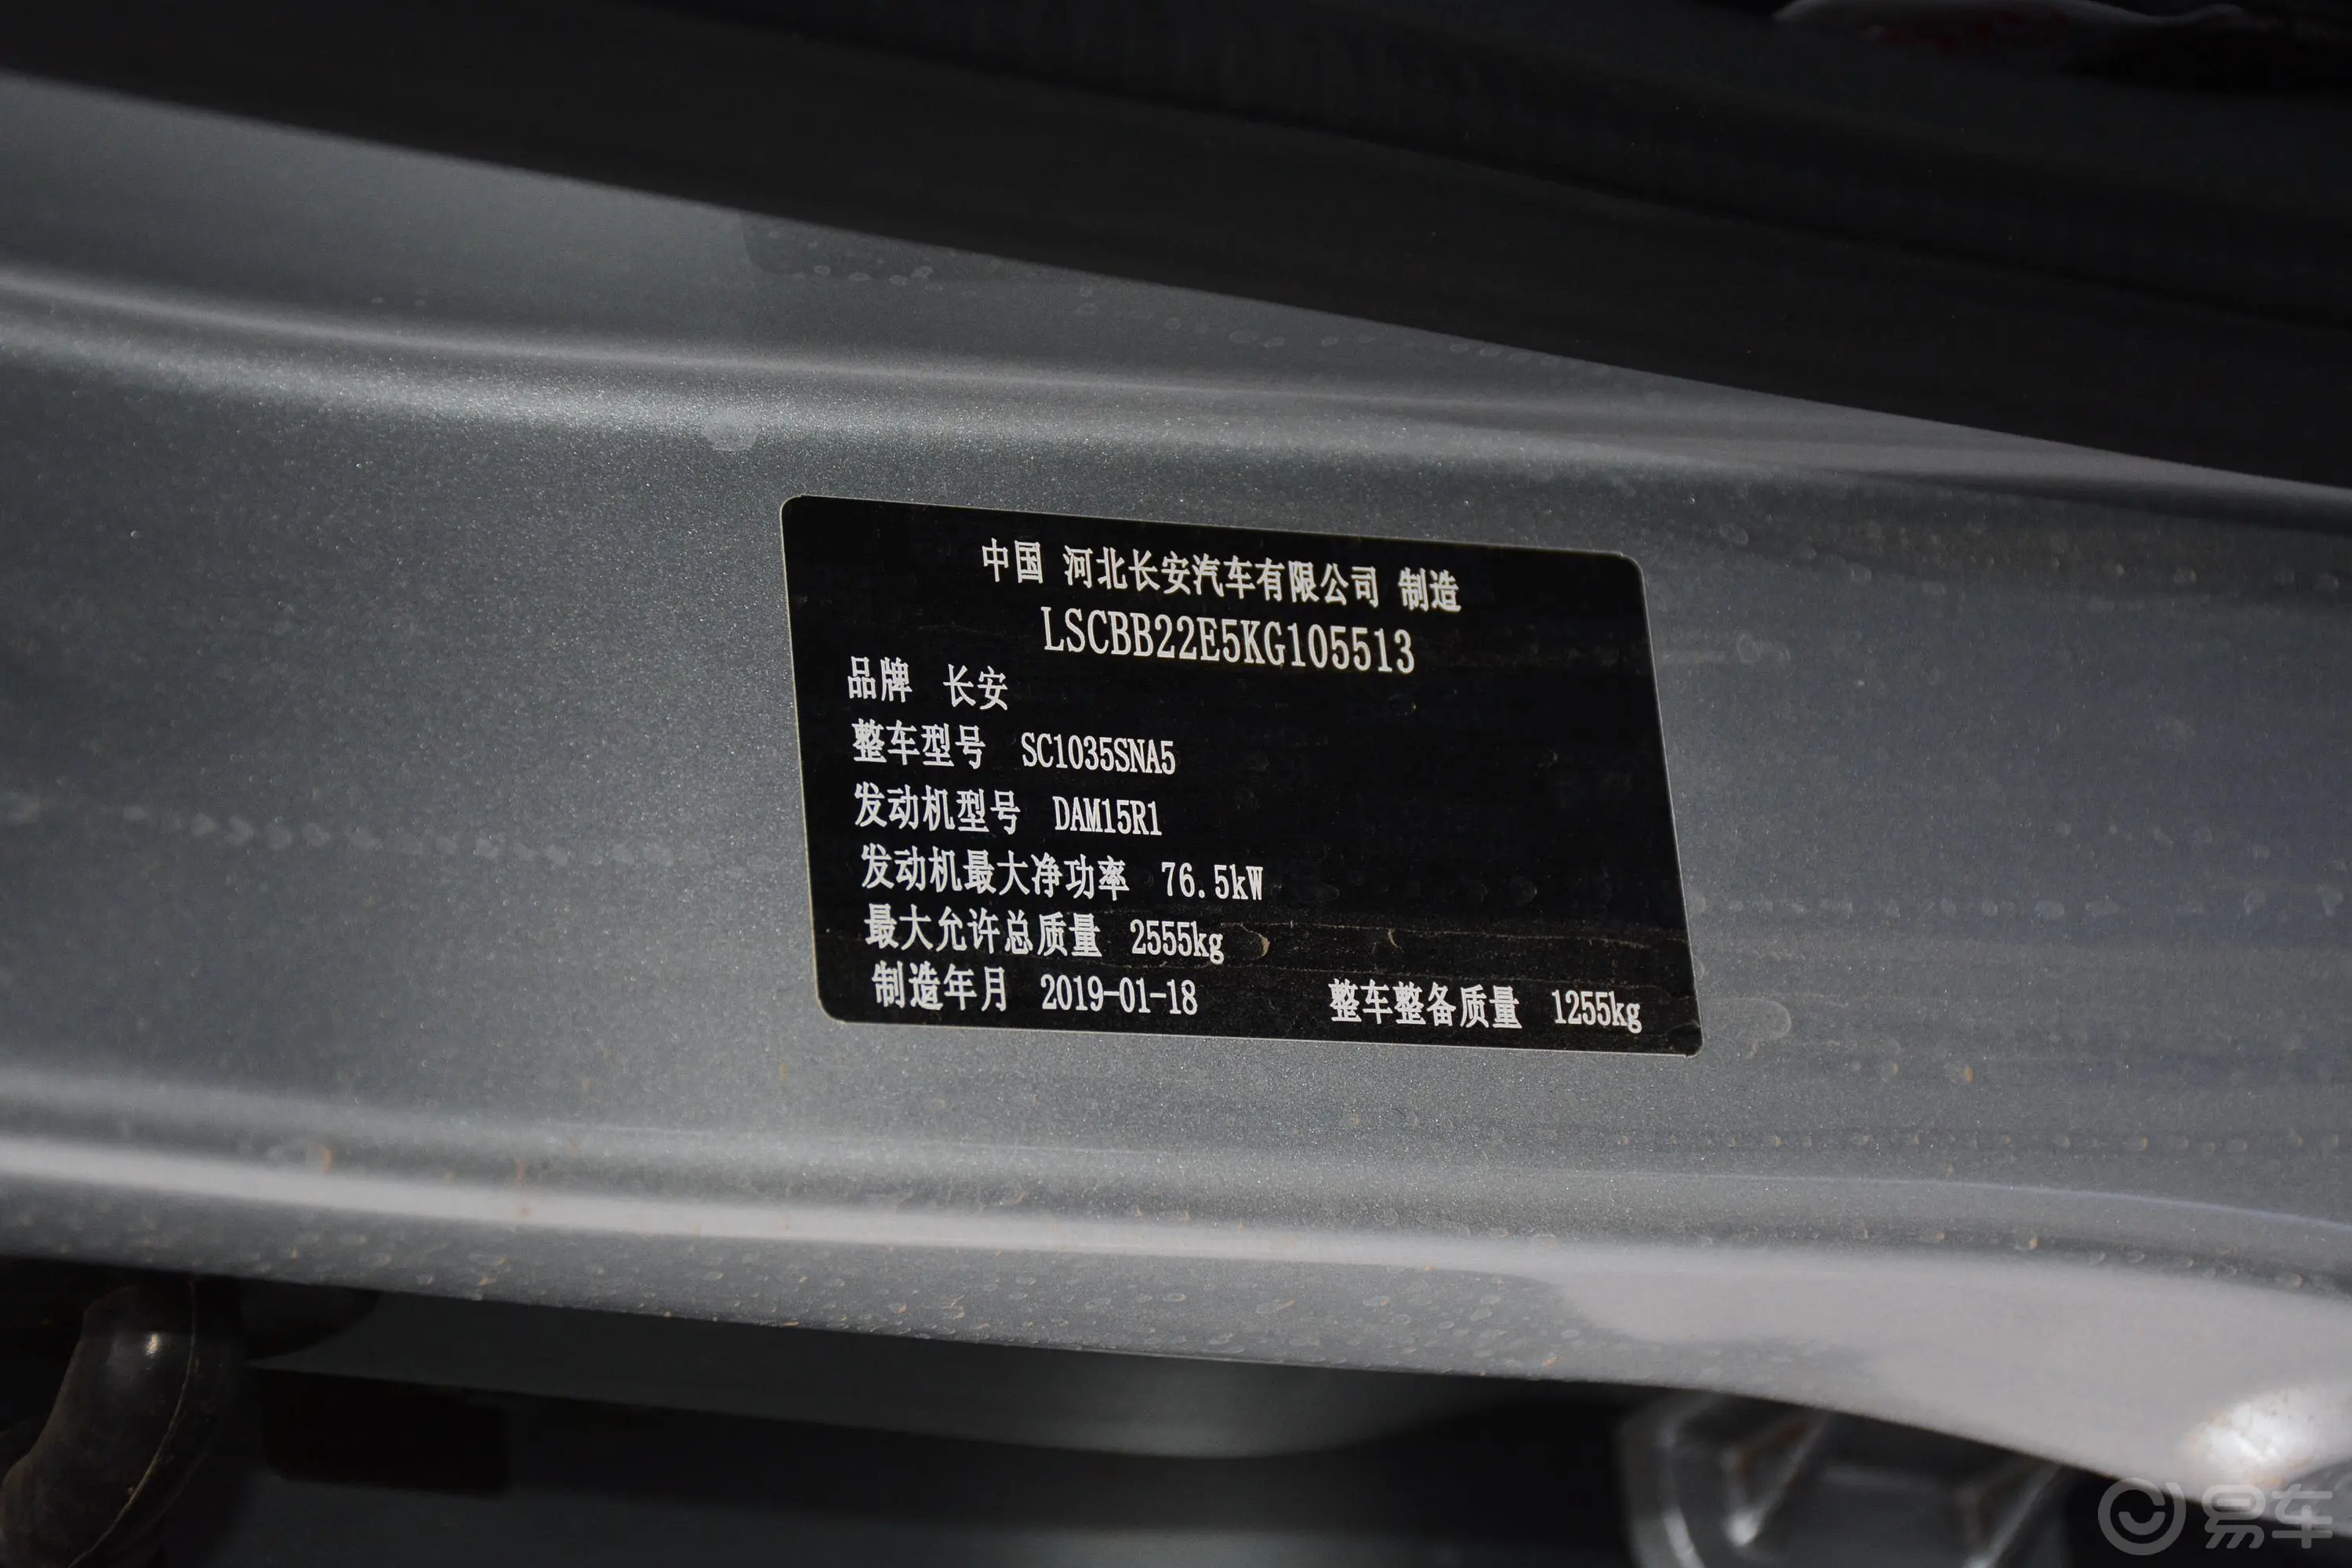 神骐T10载货车 1.5L 双排舒适版（995KG）车辆信息铭牌